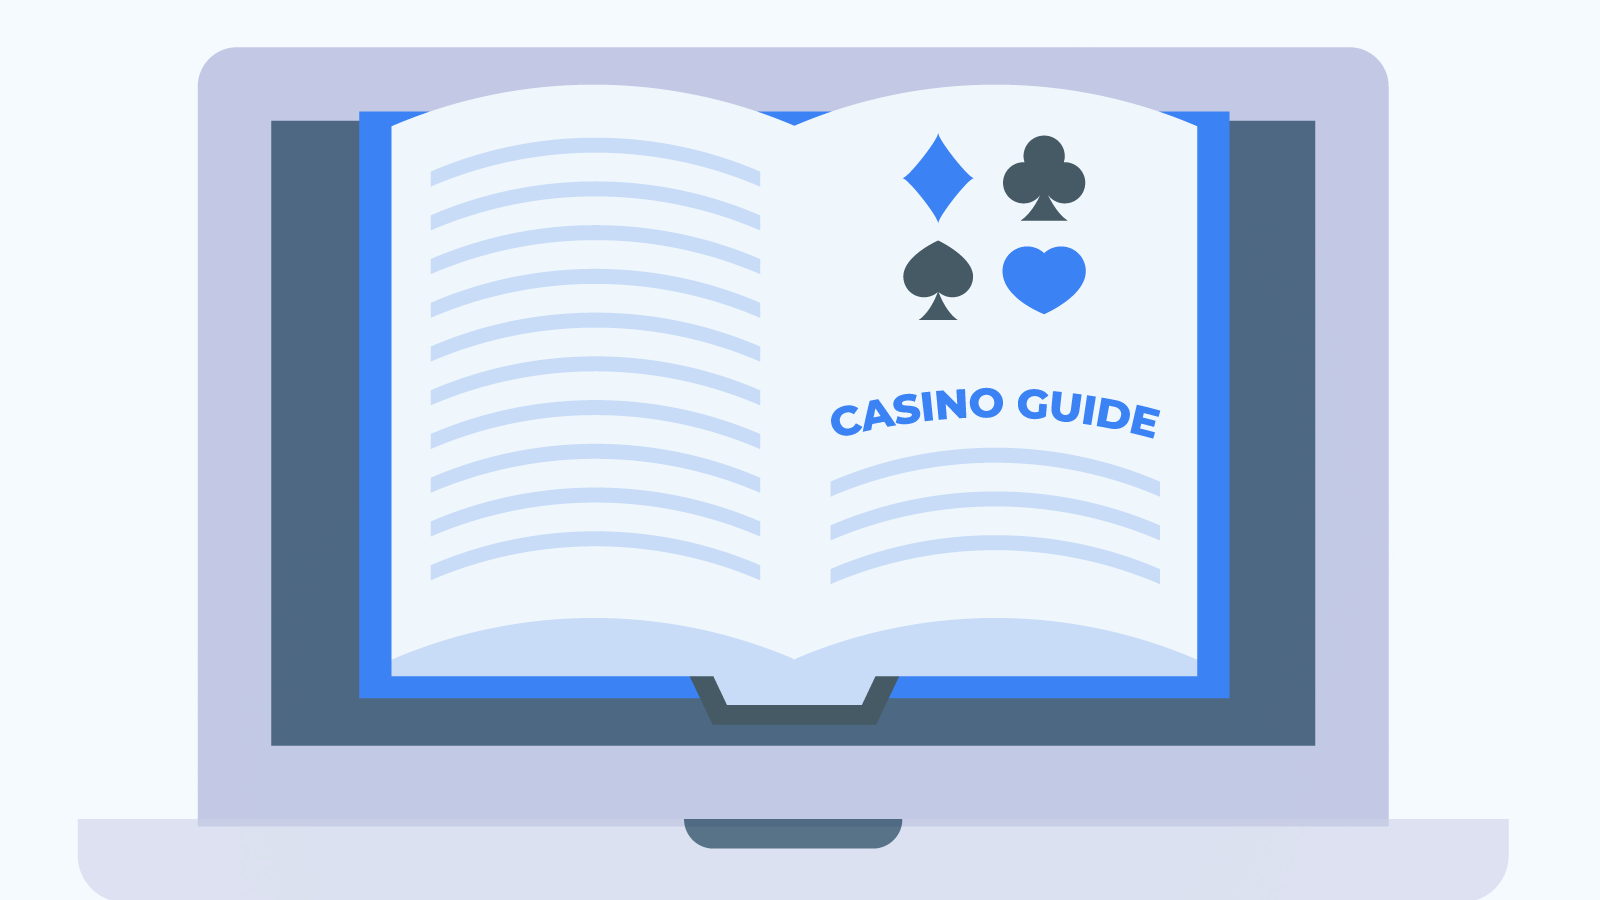 Casino guide